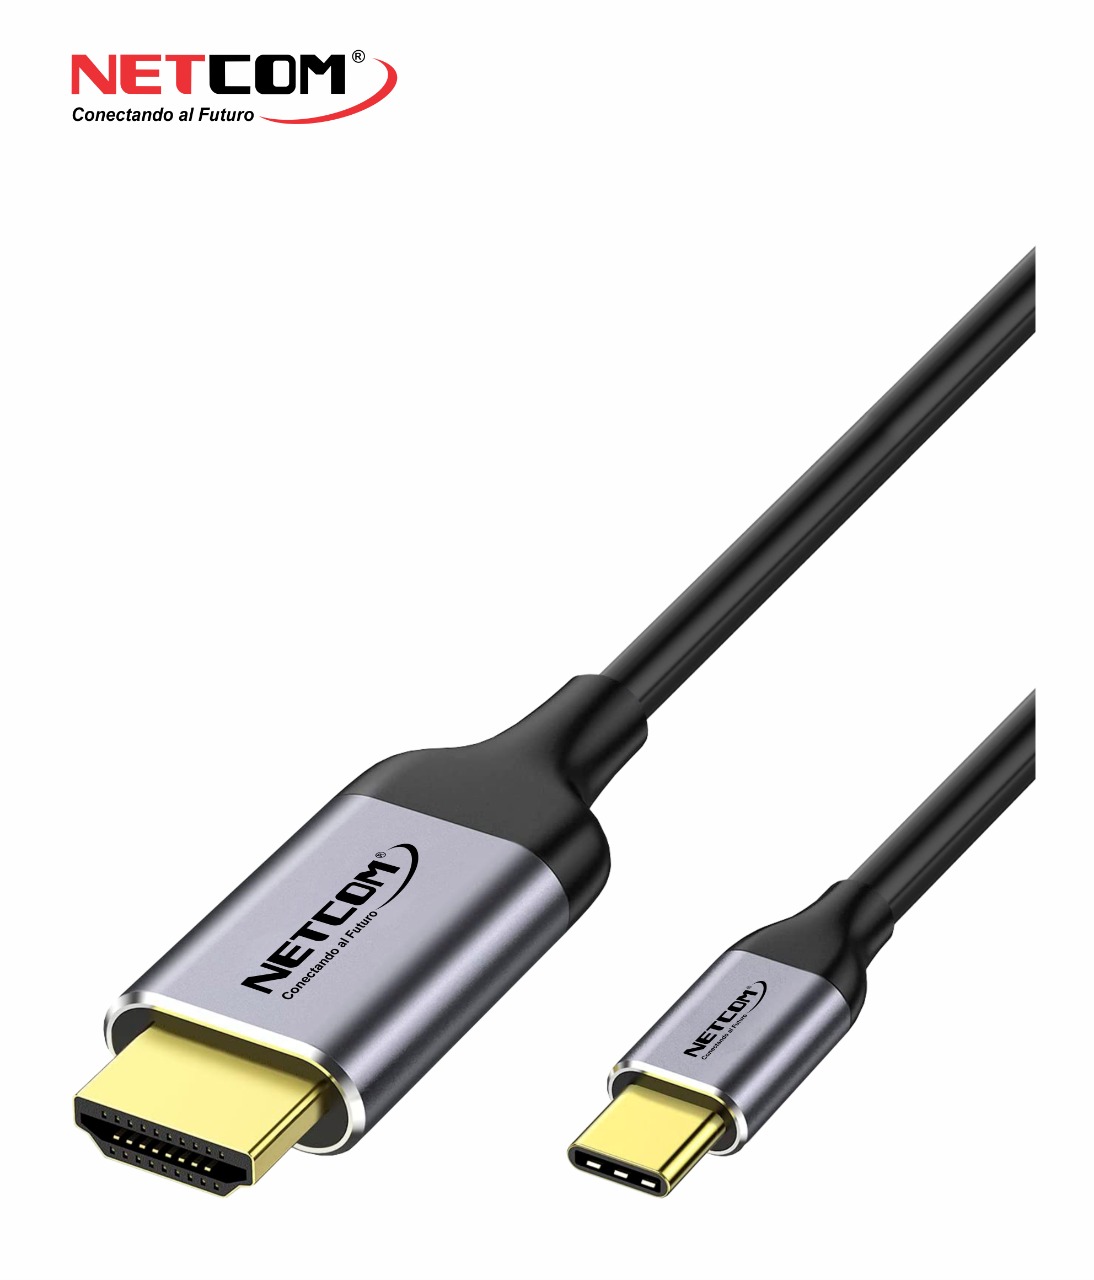 Cable móvil a televisión (USB tipo C a HDMI)